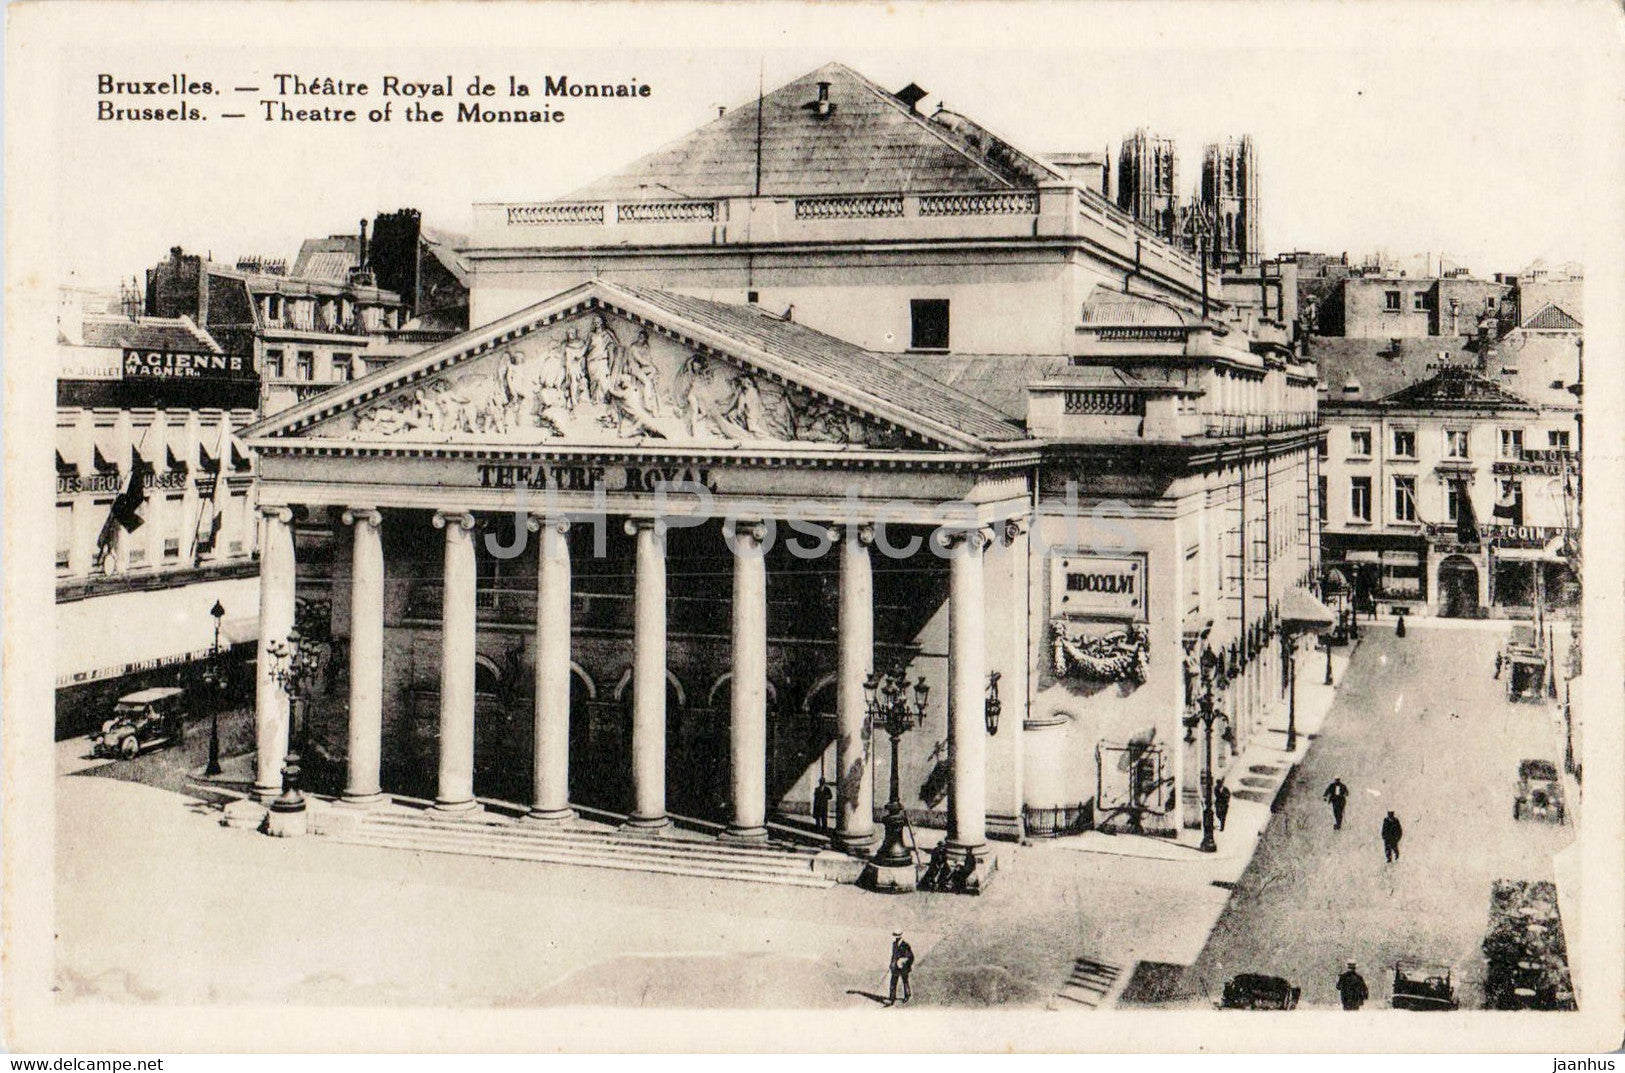 Bruxelles - Brussels - Theatre Royal de la Monnaie - old postcard - Belgium - unused - JH Postcards